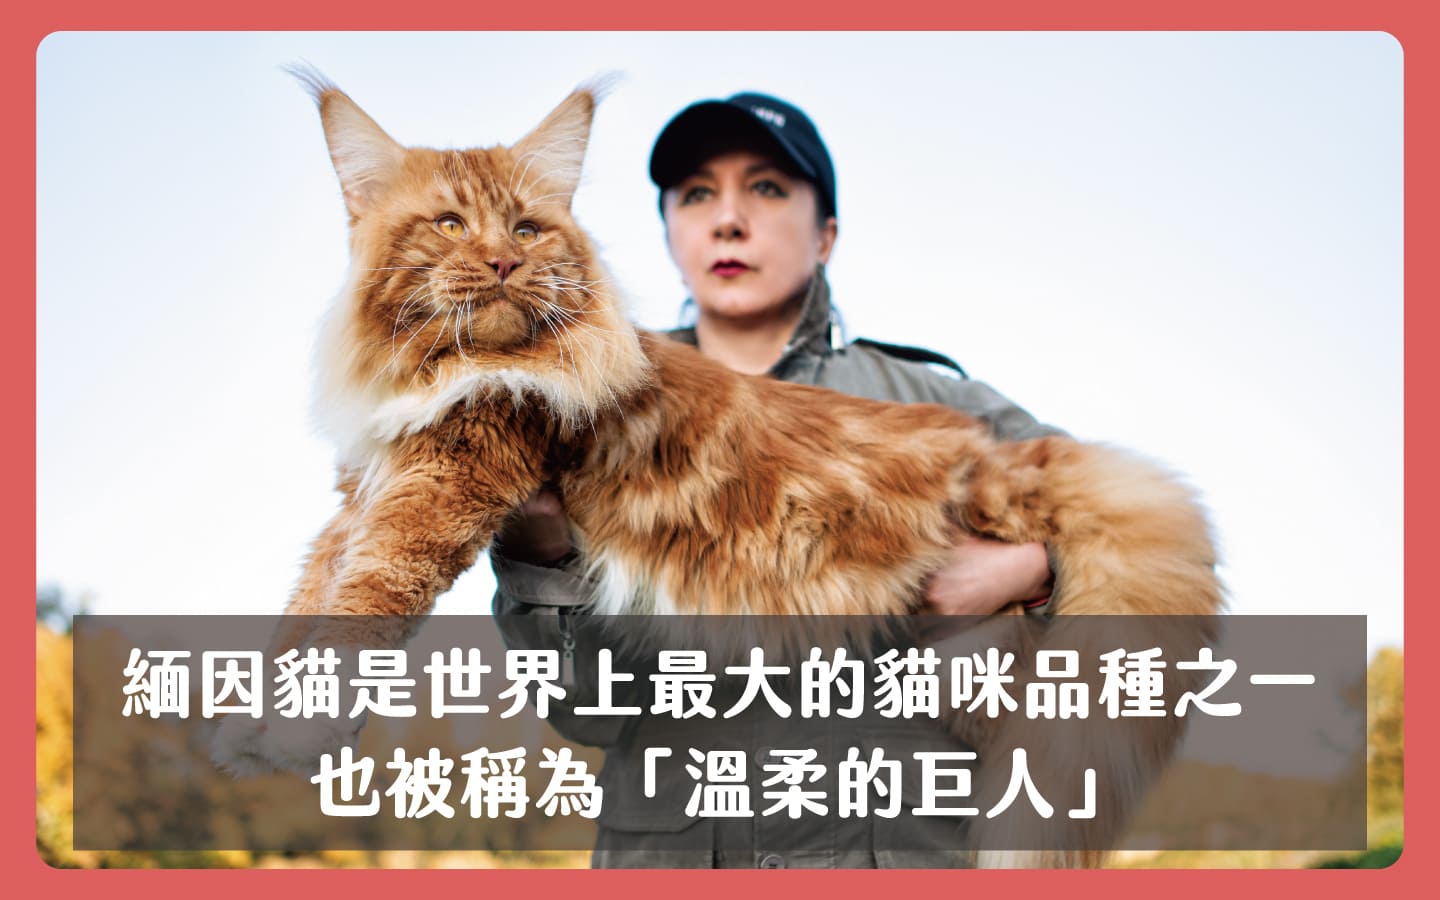 緬因貓是世界上最大的貓咪品種之一也被稱為「溫柔的巨人」